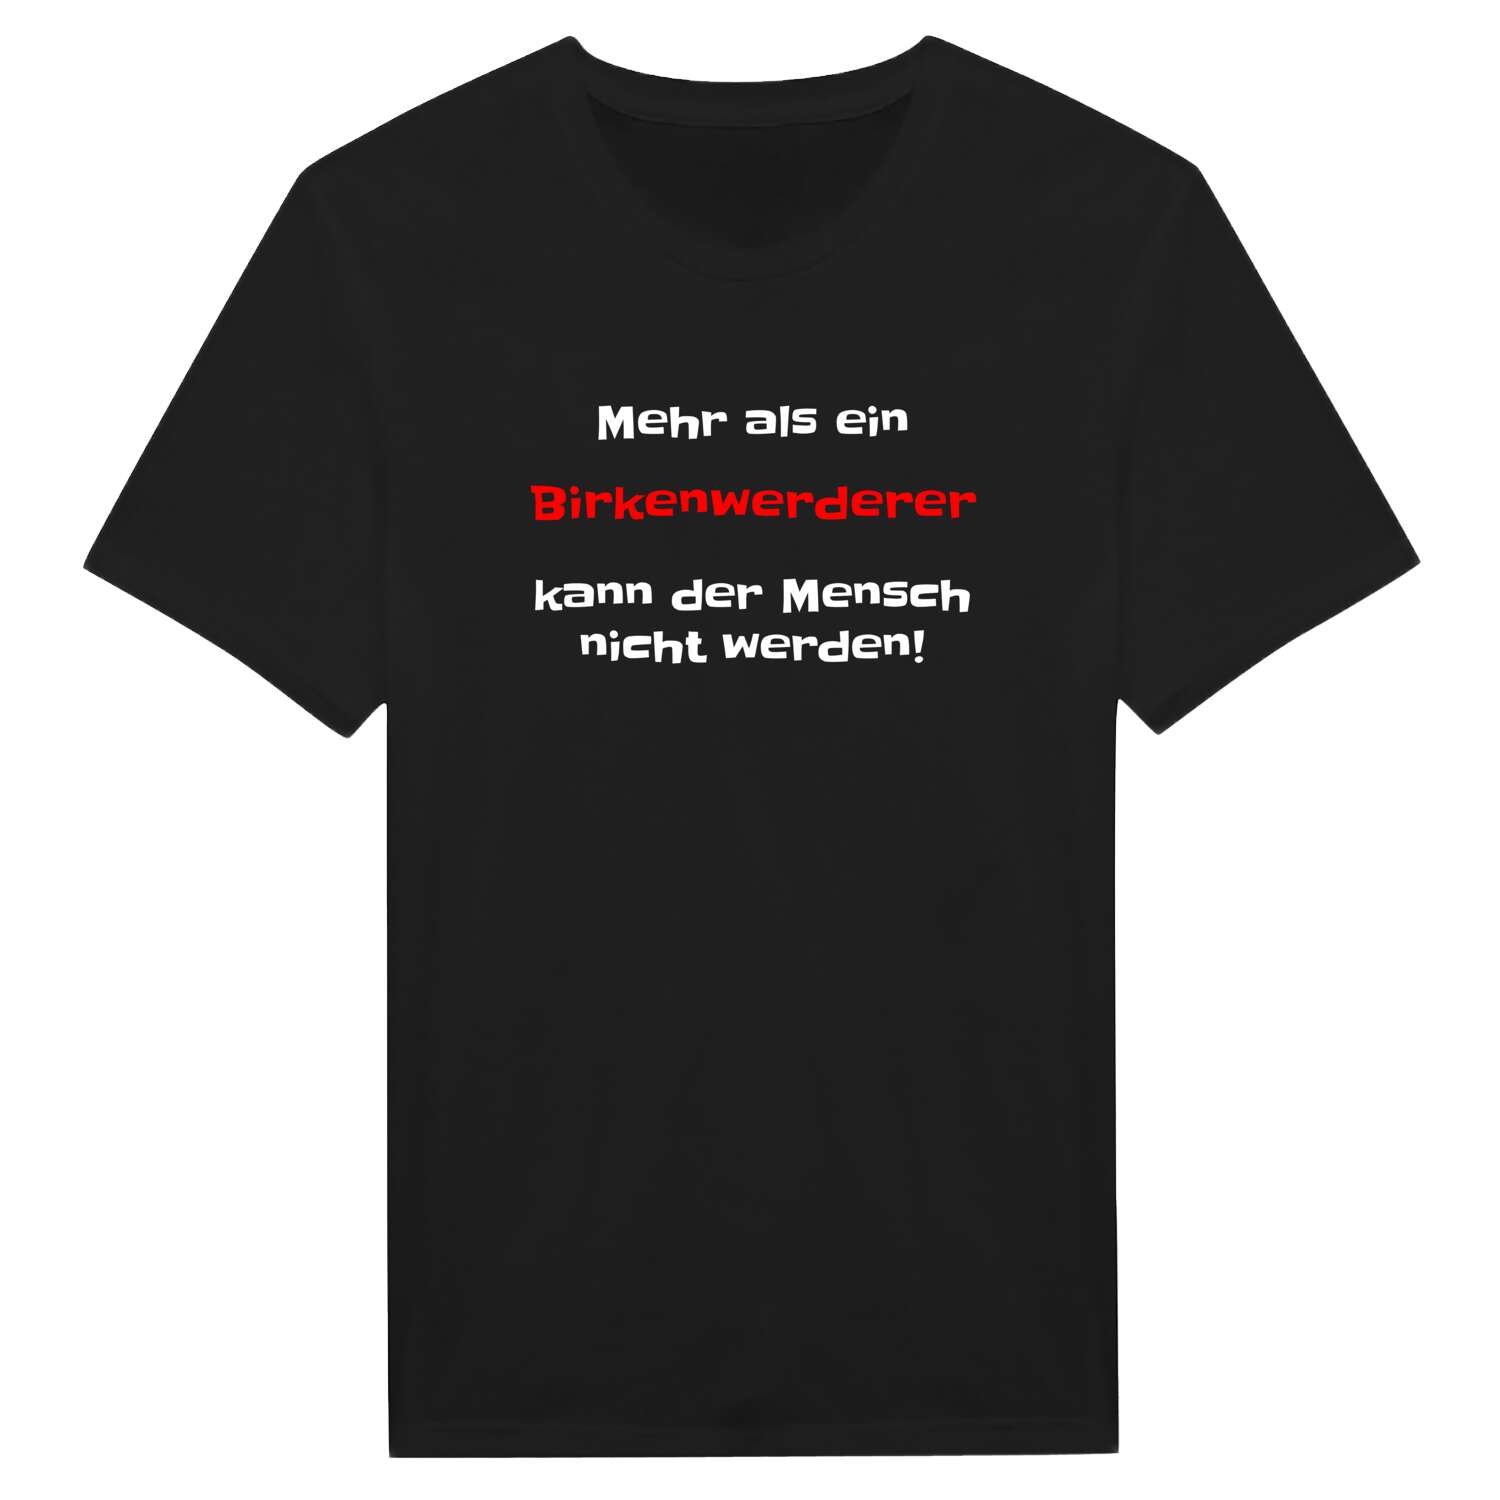 Birkenwerder T-Shirt »Mehr als ein«